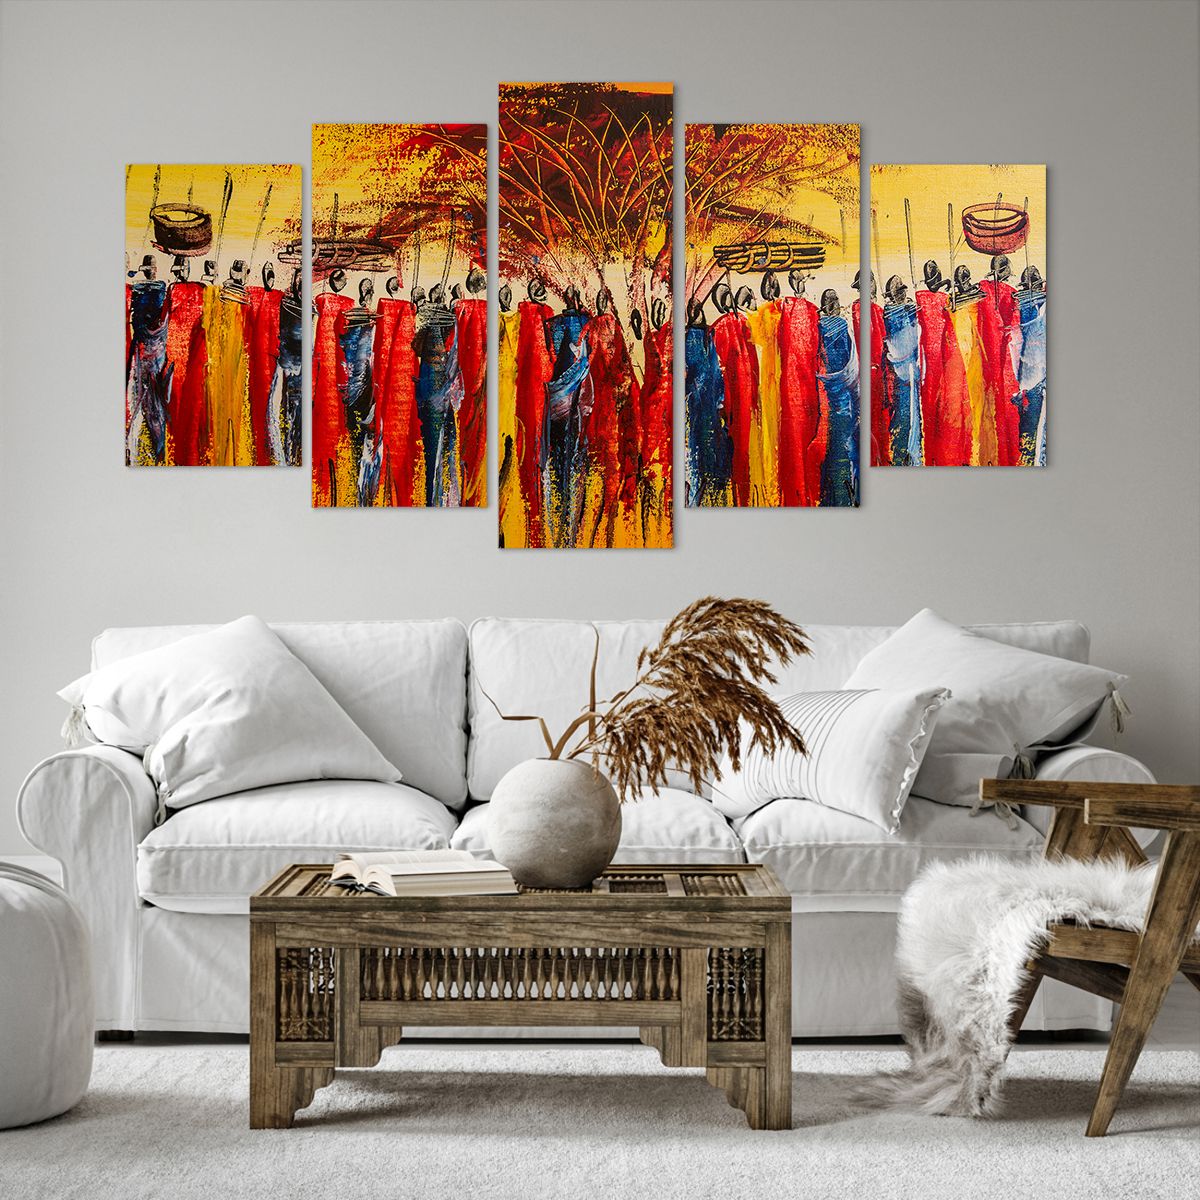 Bild auf Leinwand Kunst, Bild auf Leinwand Personen, Bild auf Leinwand Afrika, Bild auf Leinwand Kenia, Bild auf Leinwand Baobab